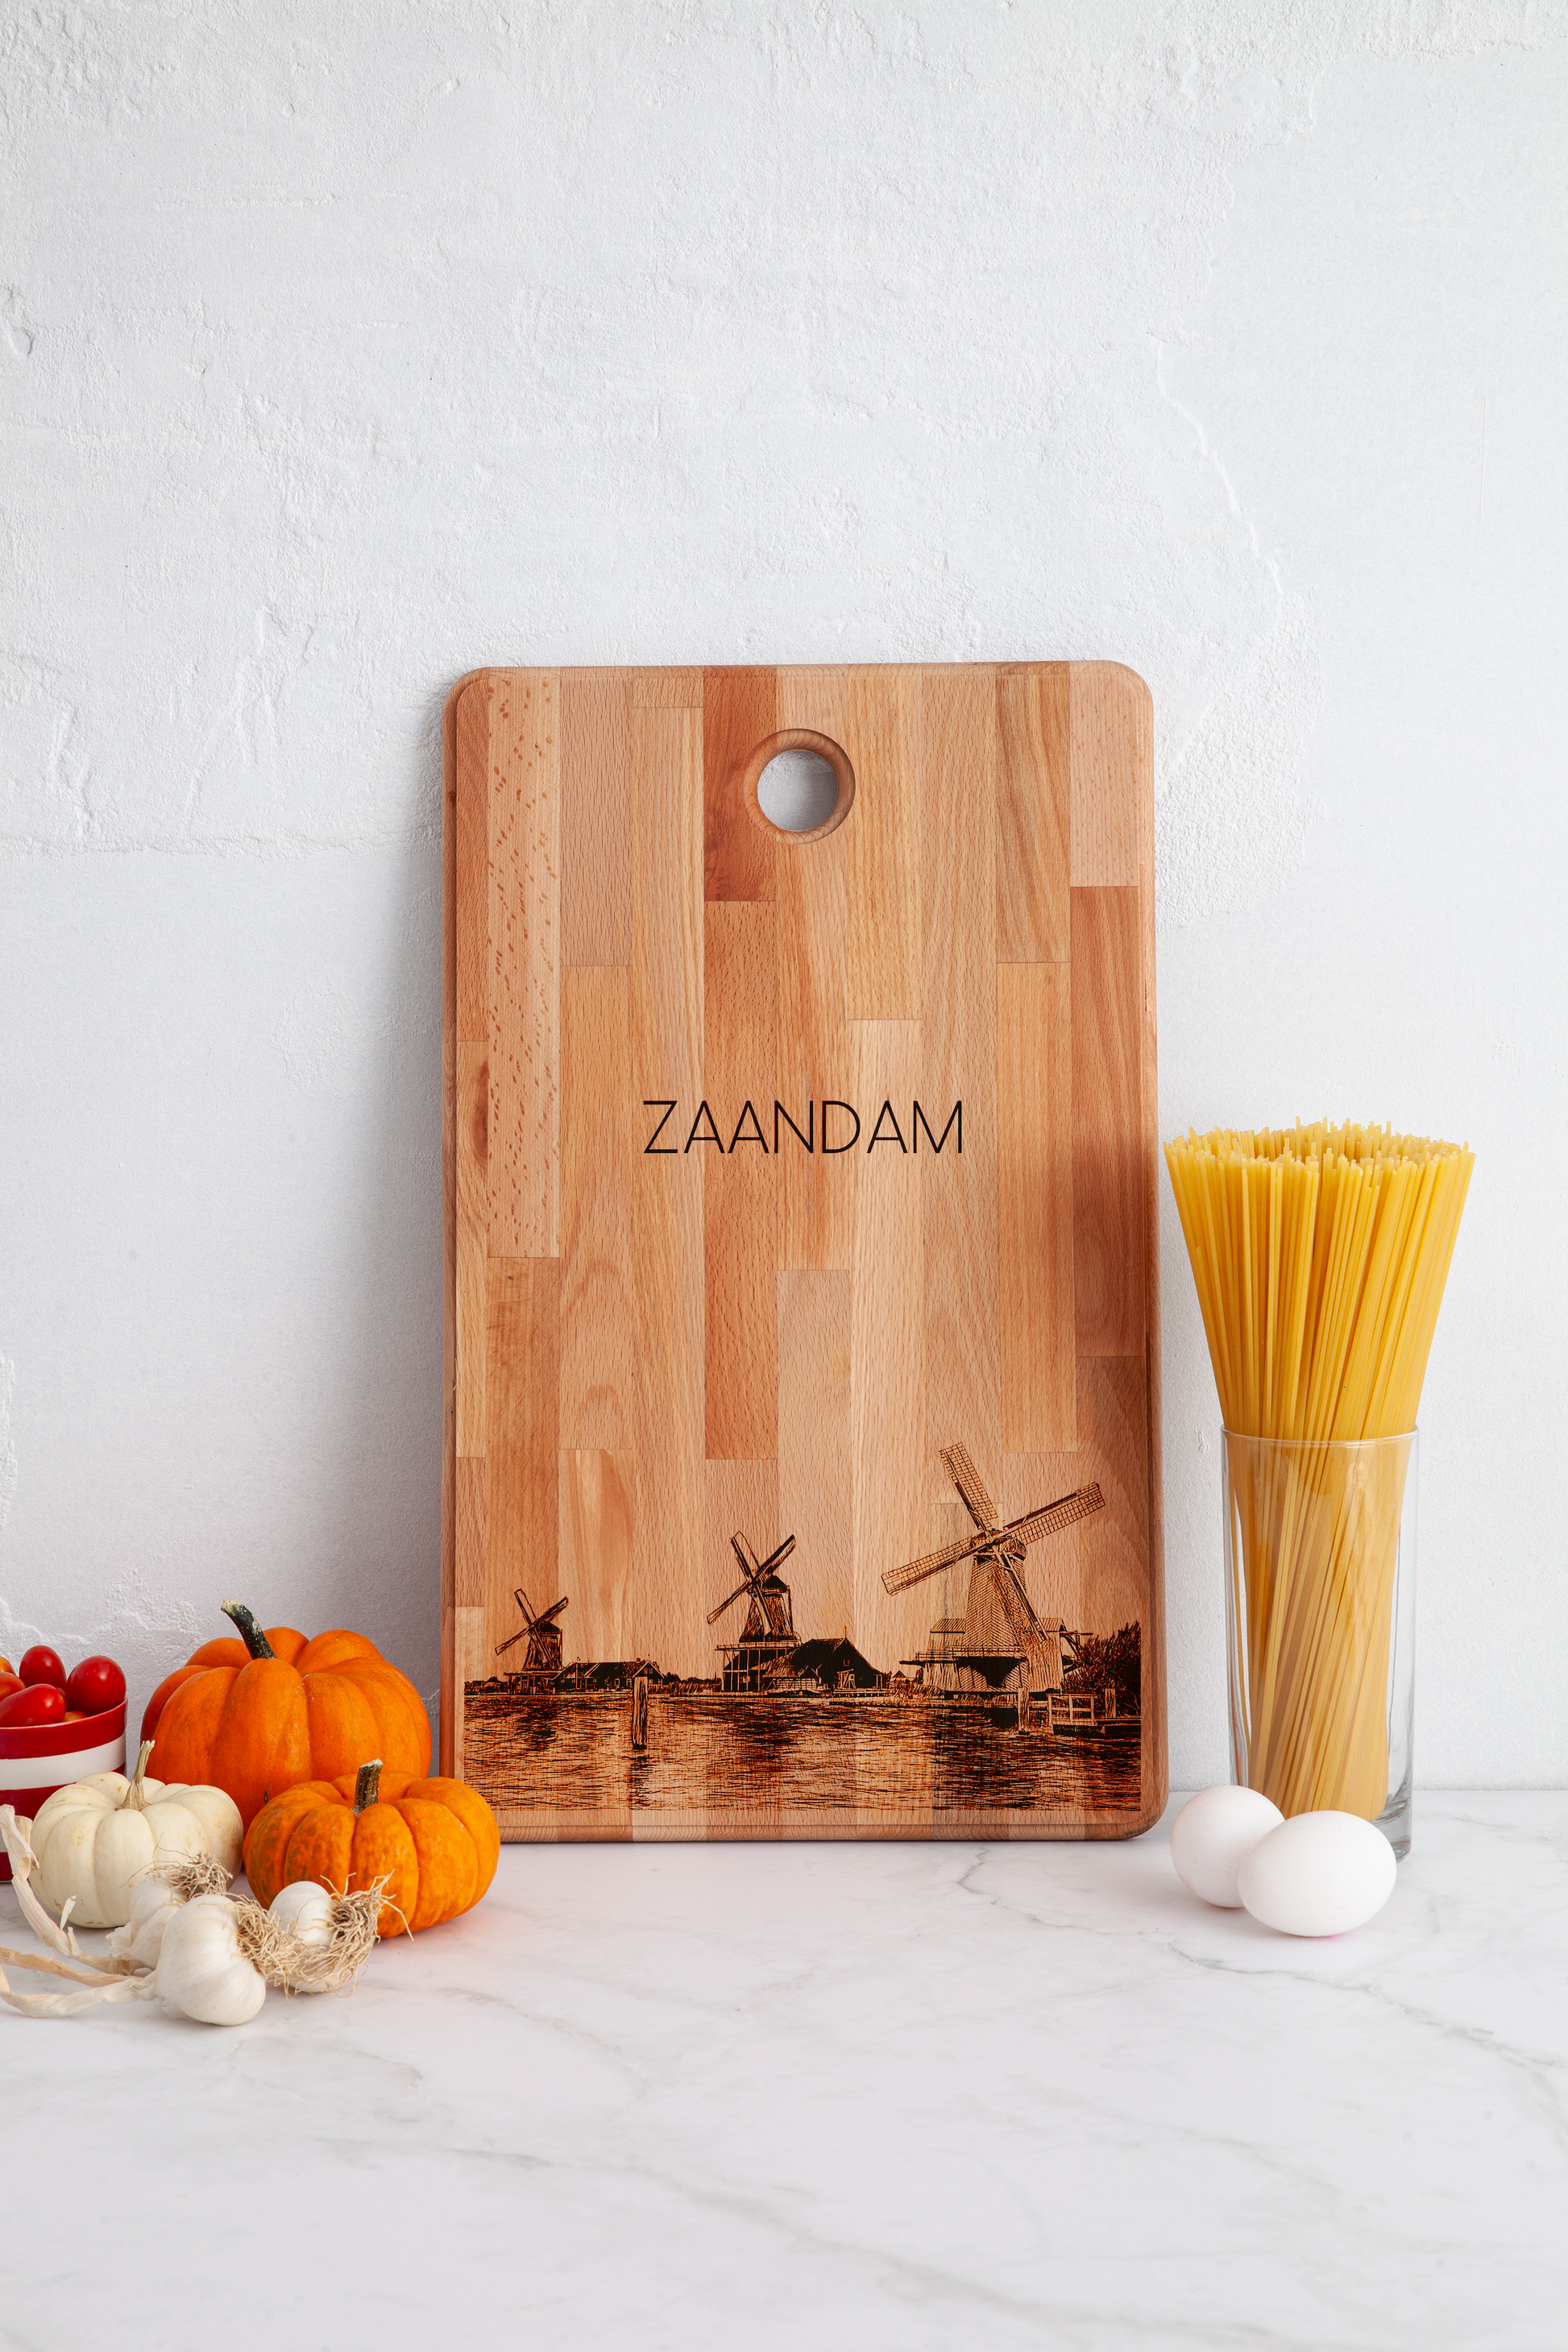 Zaandam, Zaanse Schans, cutting board, in kitchen